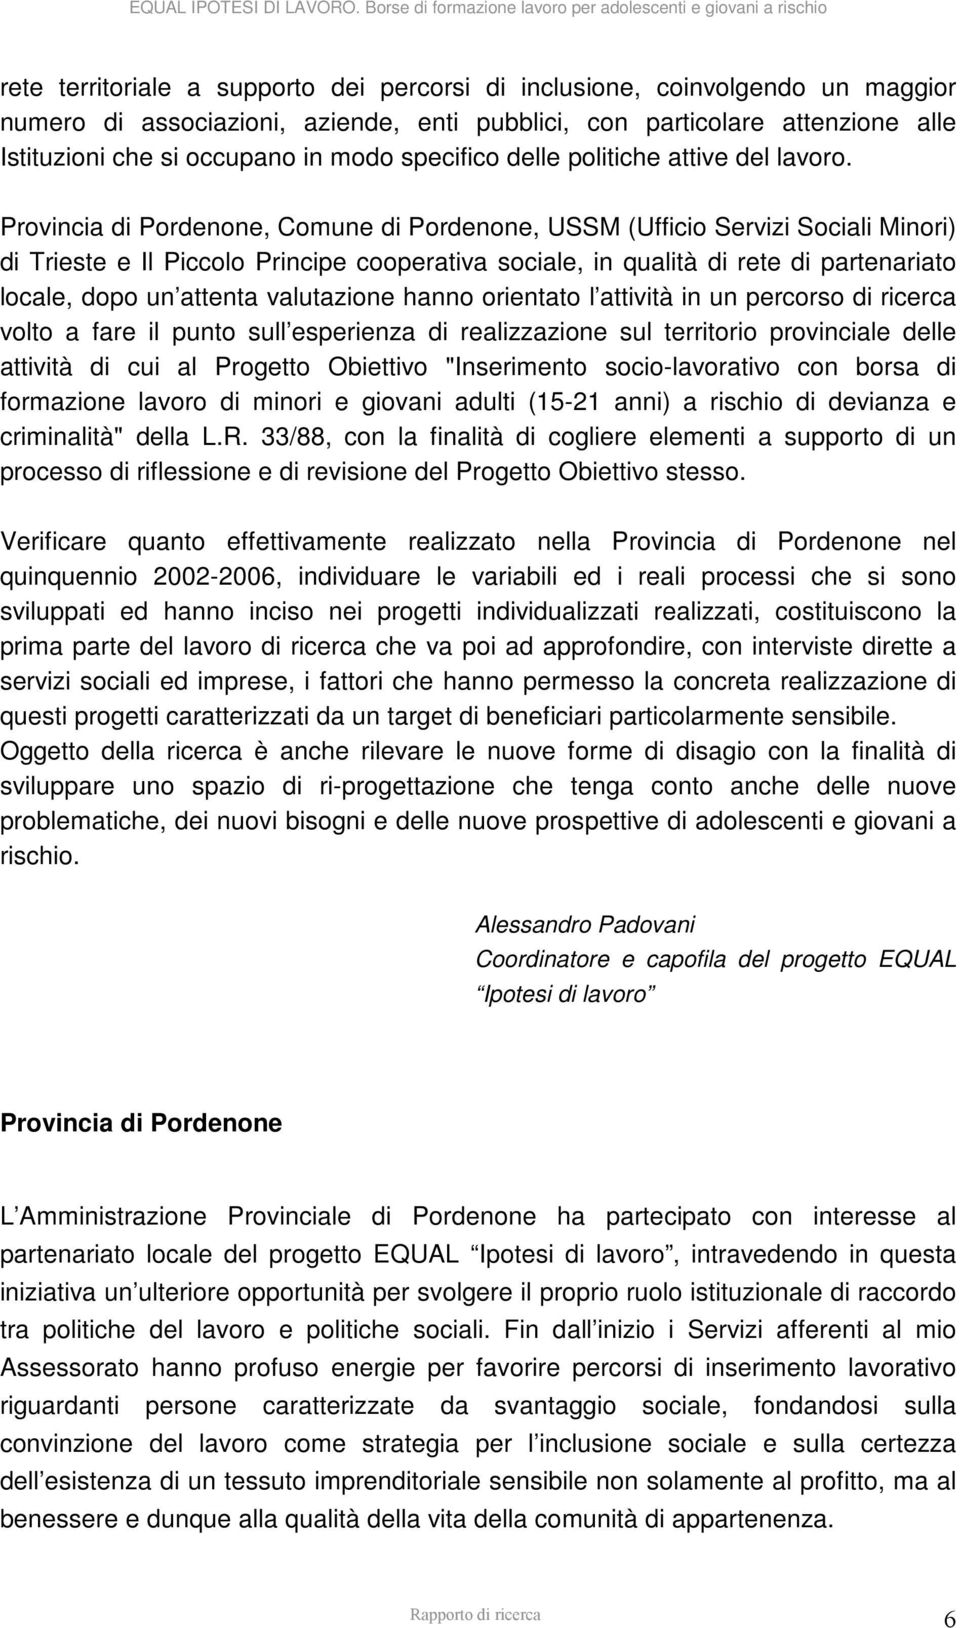 Provincia di Pordenone, Comune di Pordenone, USSM (Ufficio Servizi Sociali Minori) di Trieste e Il Piccolo Principe cooperativa sociale, in qualità di rete di partenariato locale, dopo un attenta